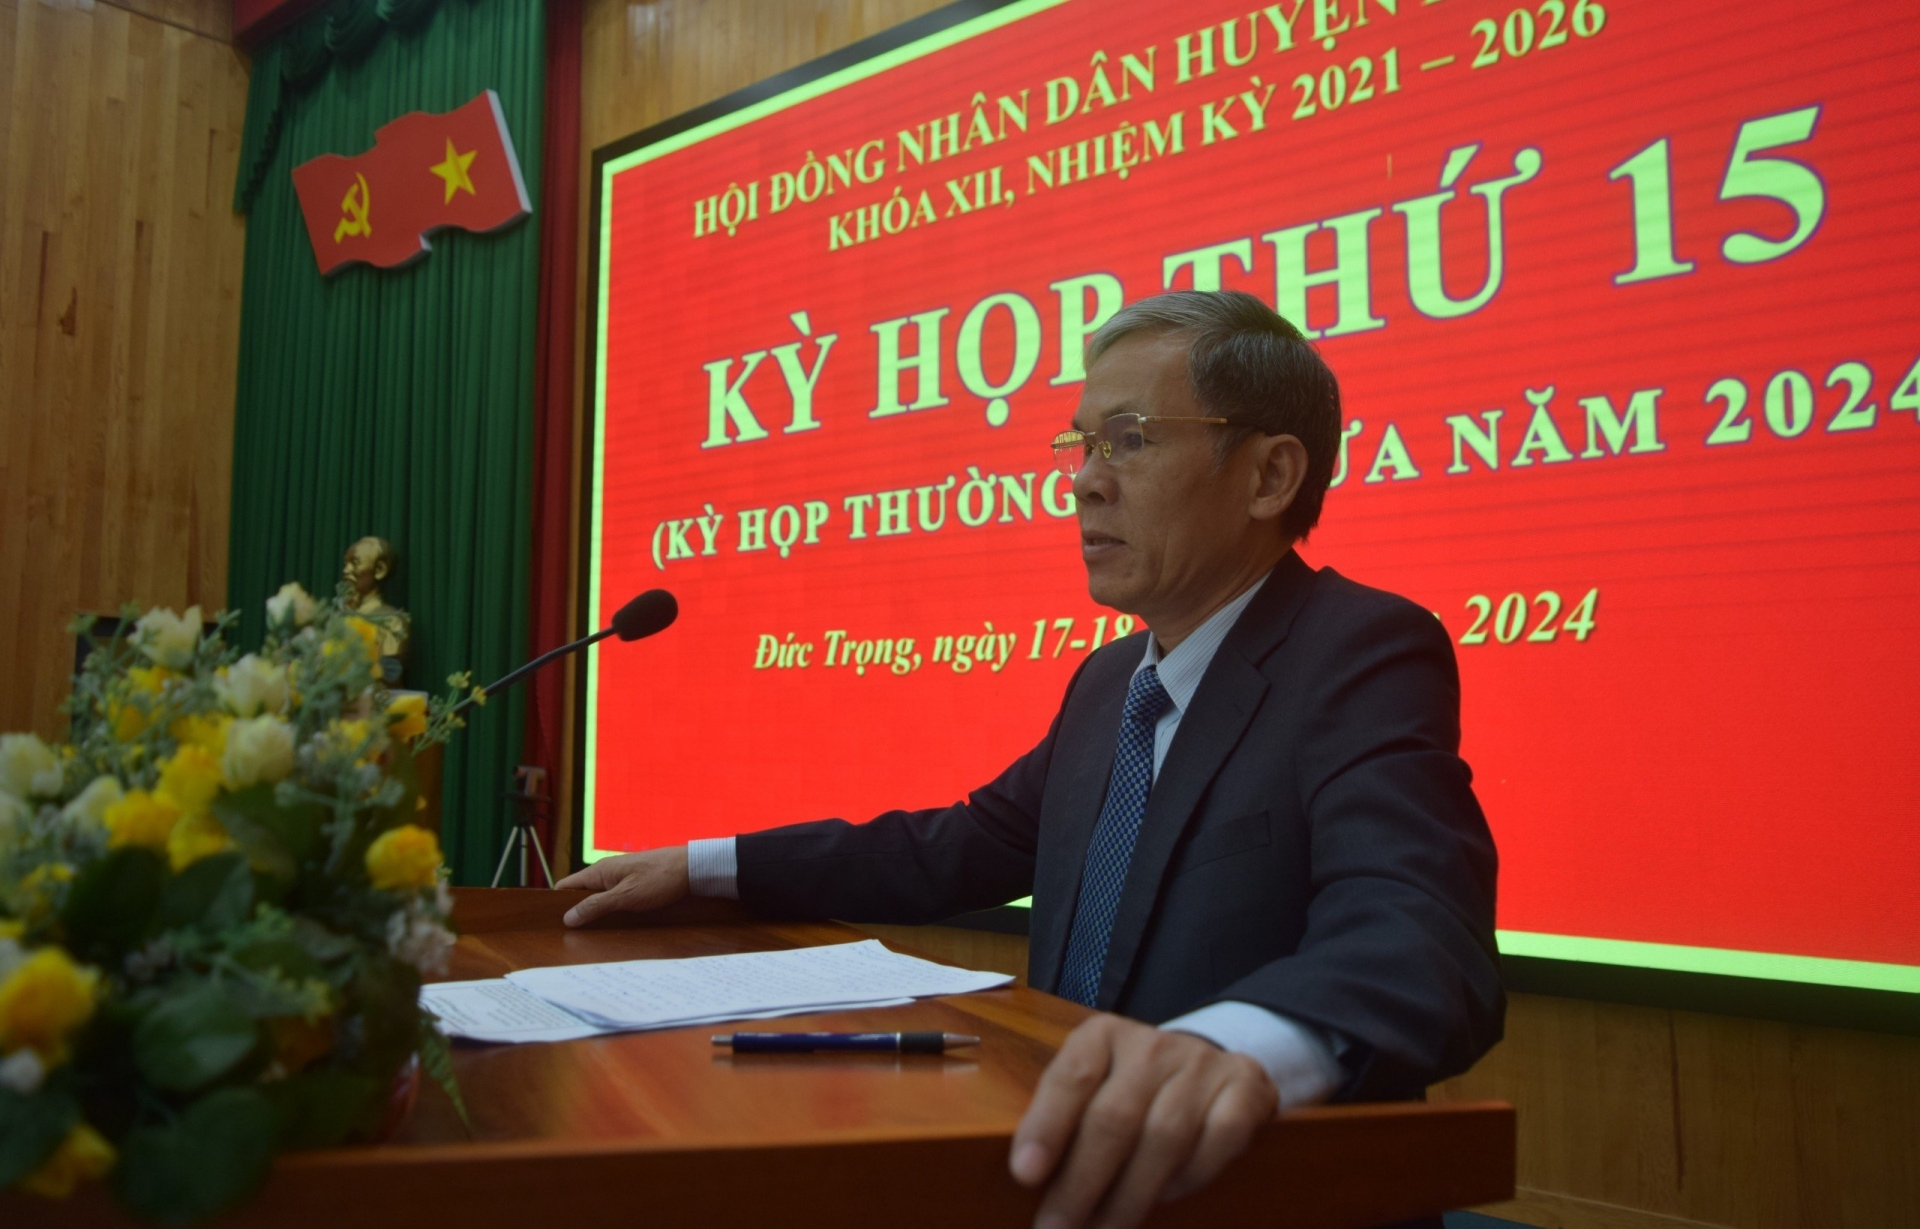 Đồng chí Nguyễn Văn Cường - Chủ tịch UBND huyện Đức Trọng tiếp thu và giải trình tại kỳ họp